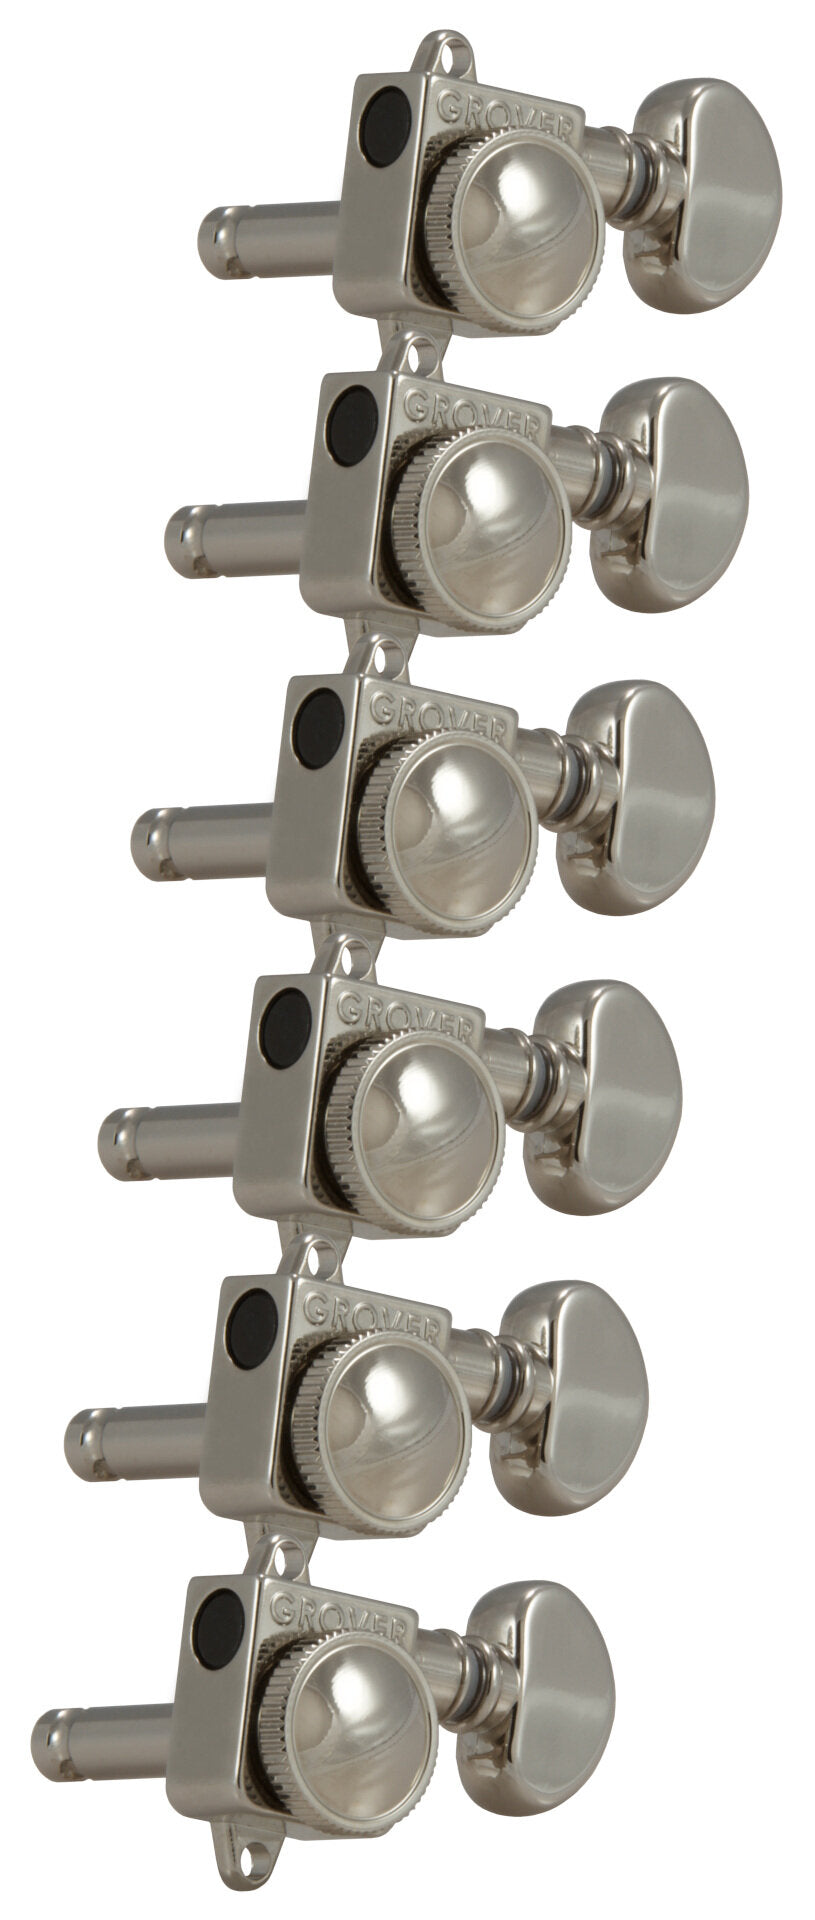 Grover 505FVN Roto-Grip Locking Rotomatics pour Accordeurs Vintage F-Style - Mécaniques Guitare, 6 en Ligne, Côté Basse (Gauche) - Nickel 